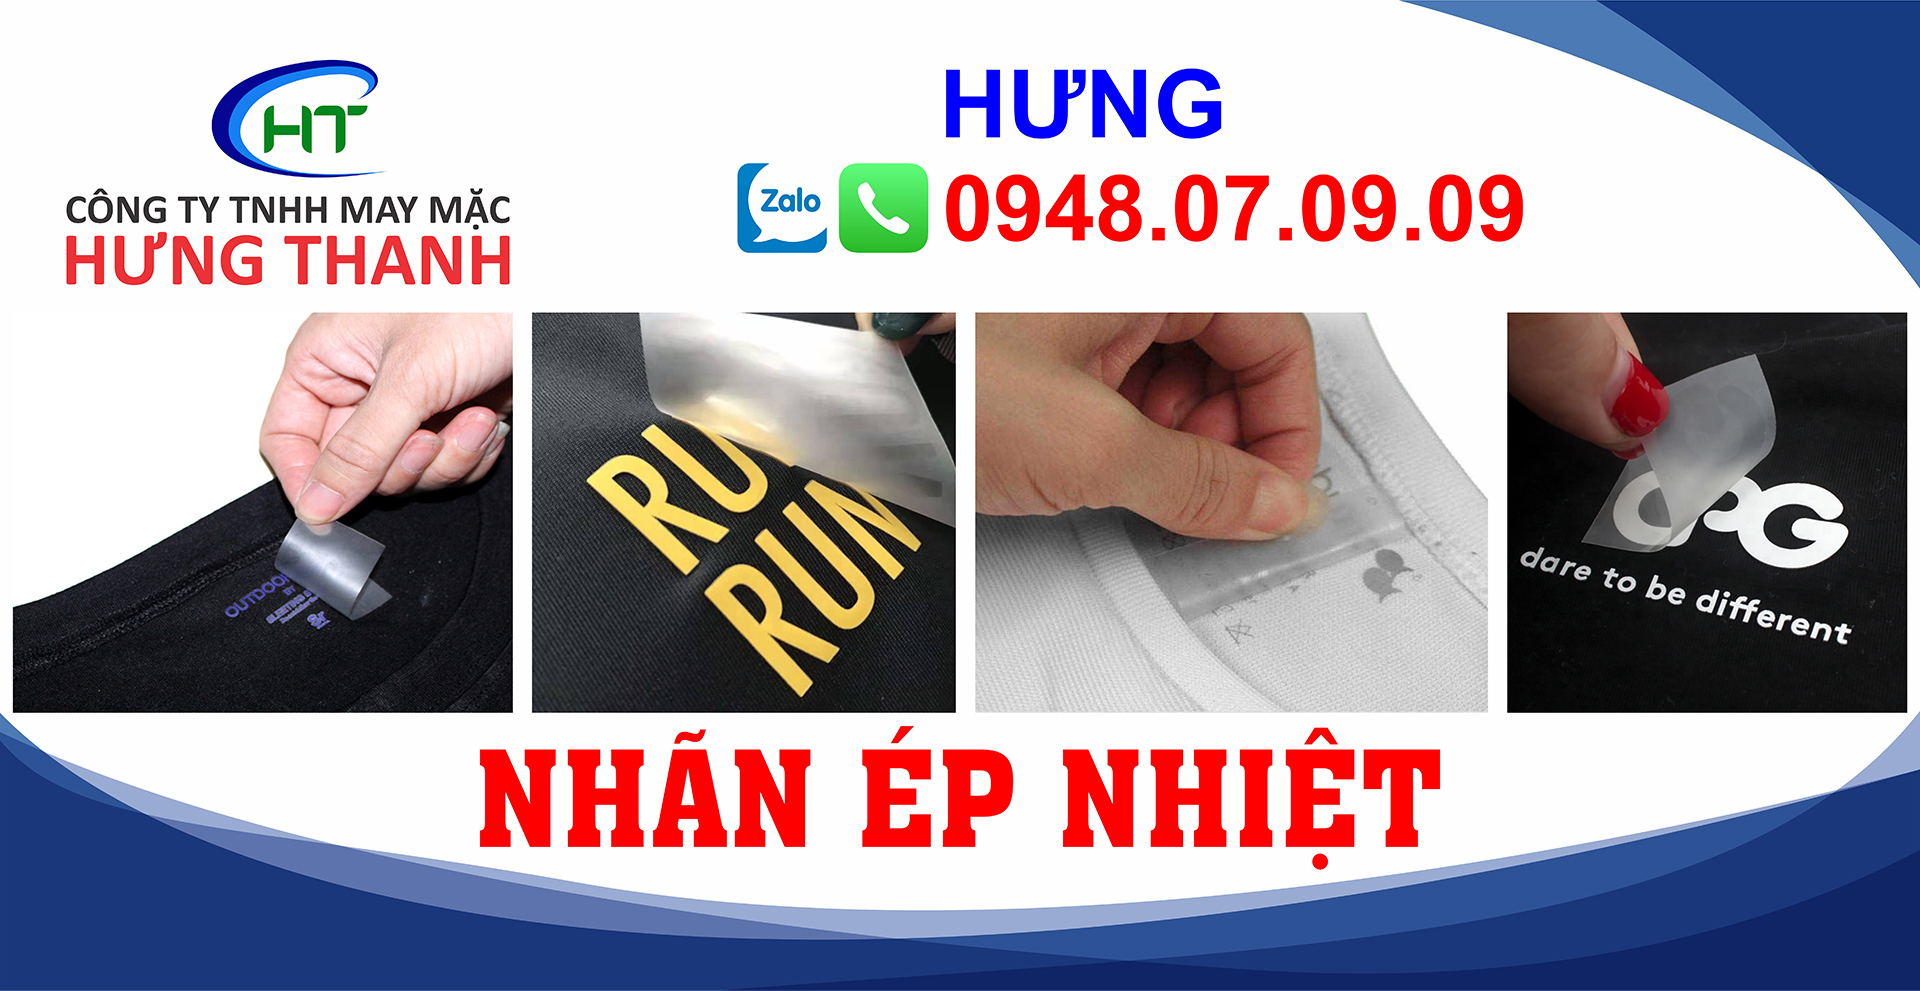 Nhan-ep-nhiet-Hung-Thanh-14.jpg